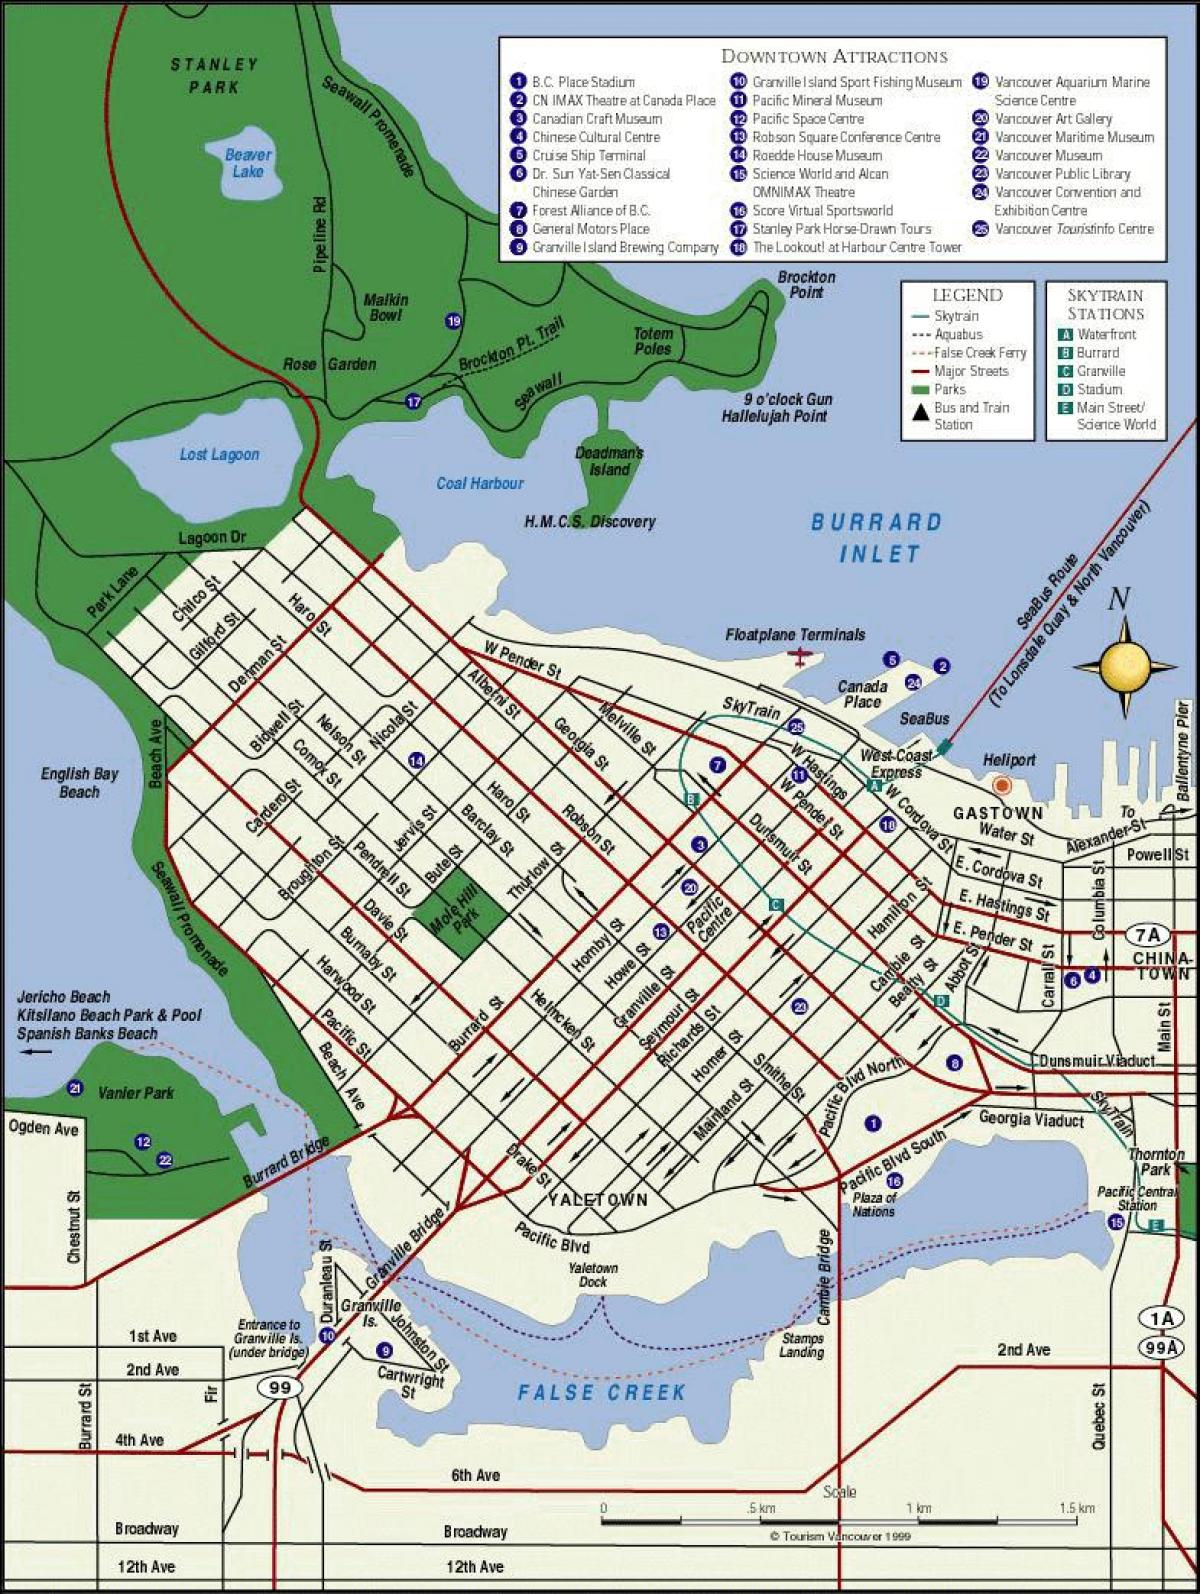 Mappa del centro di vancouver